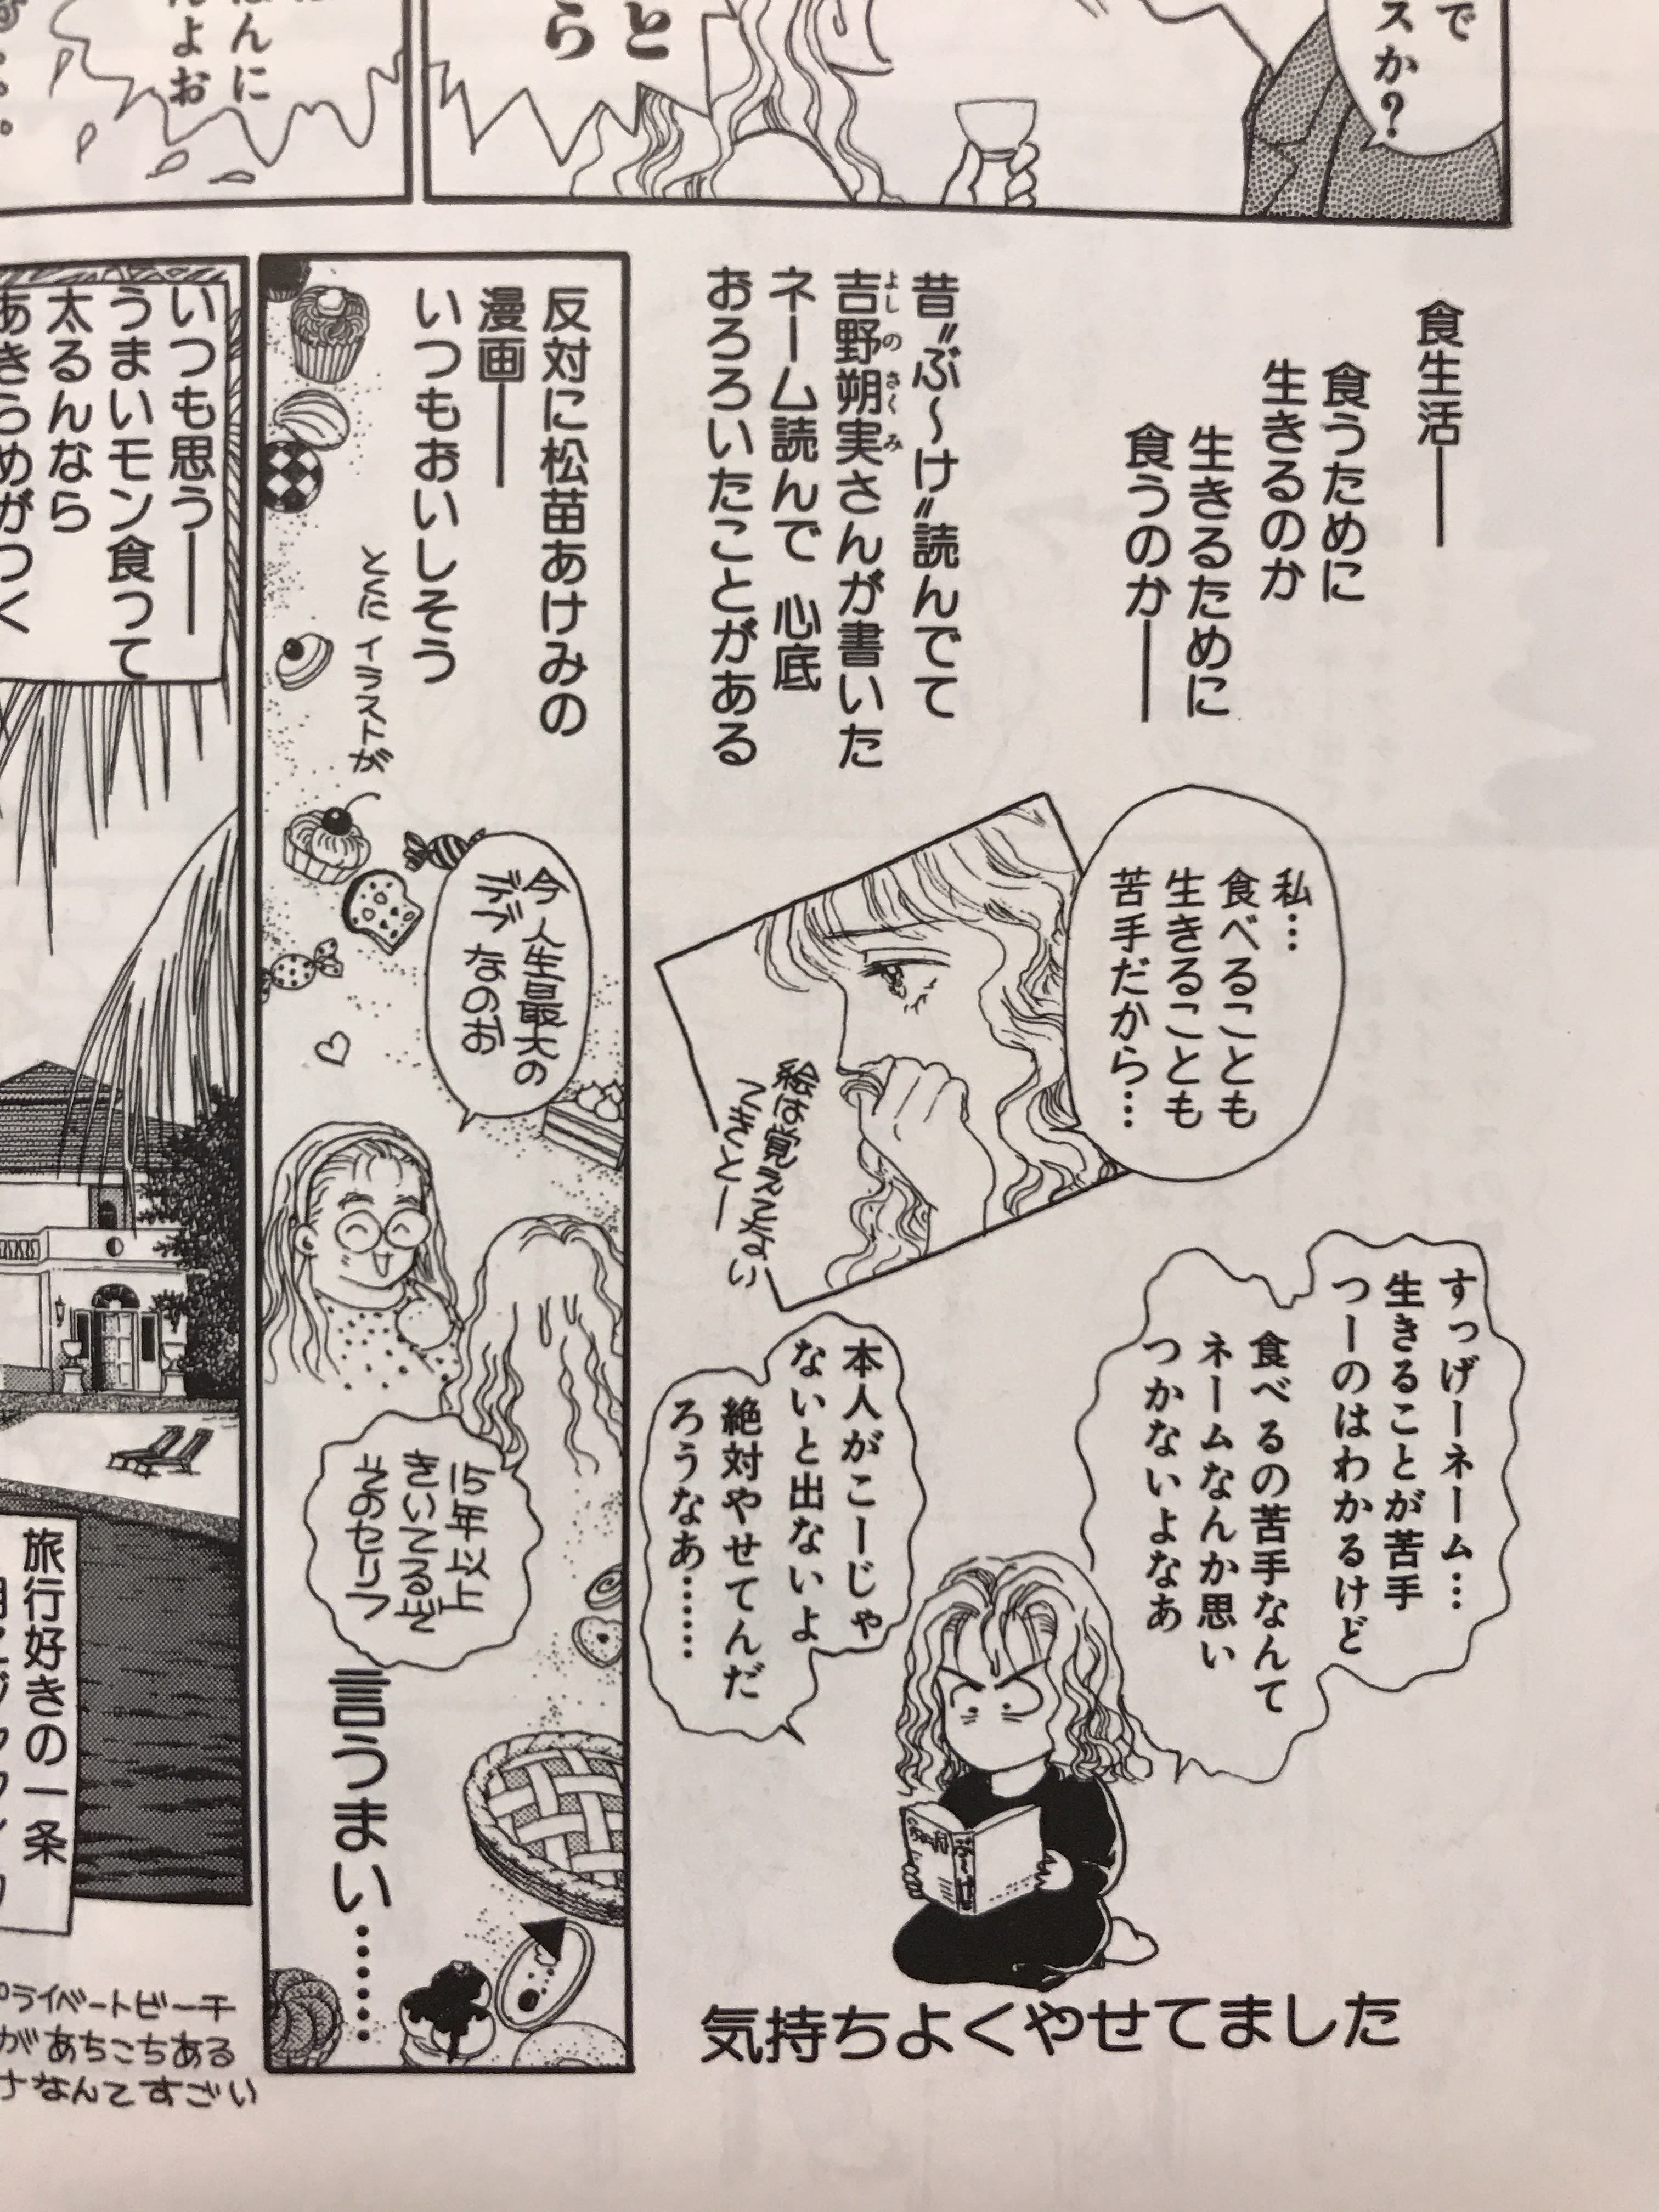 余談ですが一条ゆかり先生の食生活エッセイ漫画に「自分は食いしん坊だから吉野朔実先生の漫画に出て...